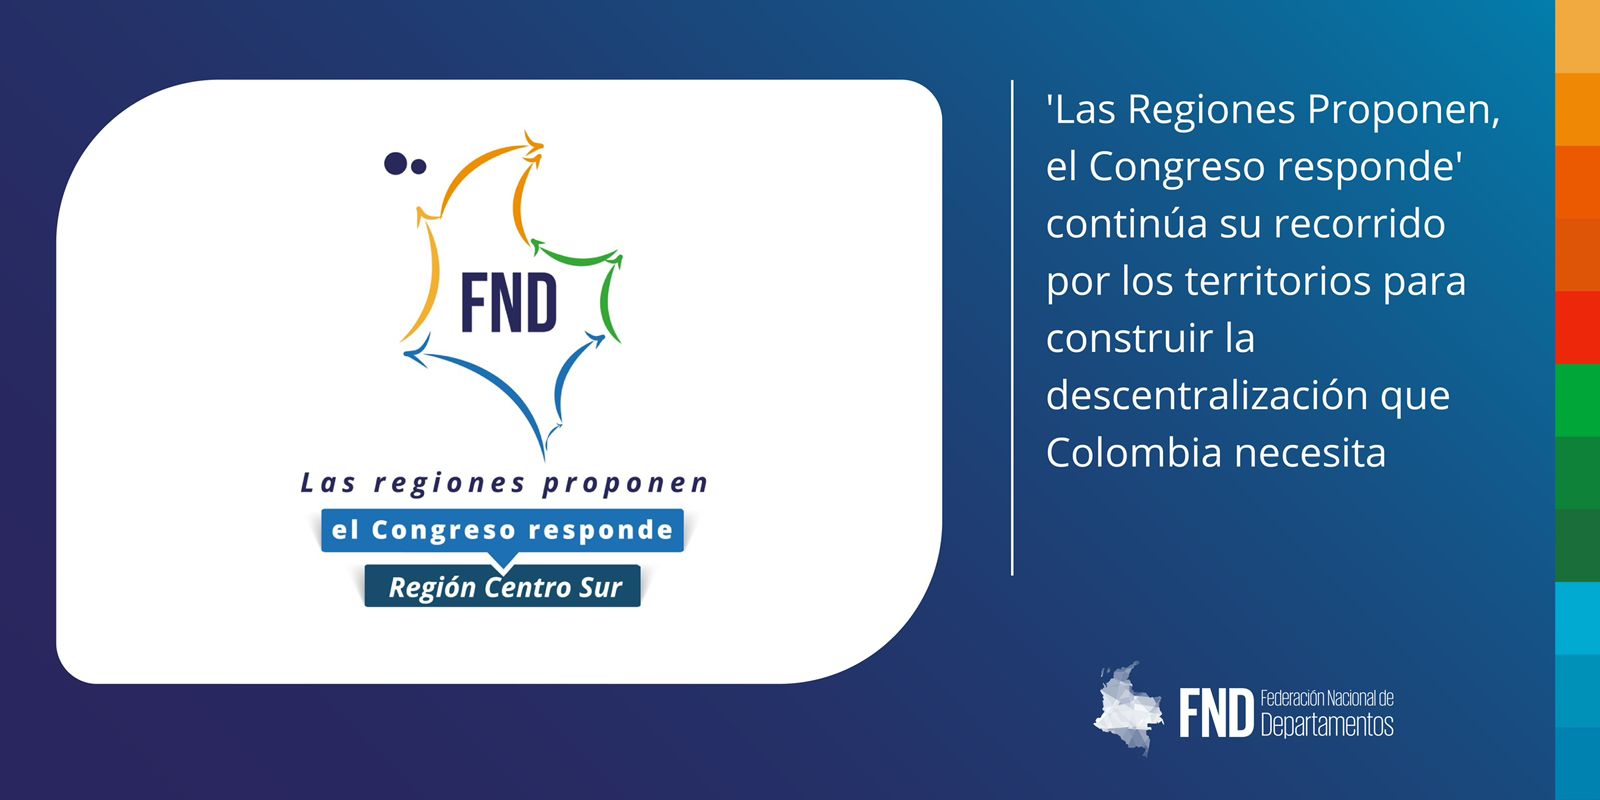 image 'Las Regiones Proponen, el Congreso responde' continúa su recorrido por los territorios para construir la descentralización que Colombia necesita